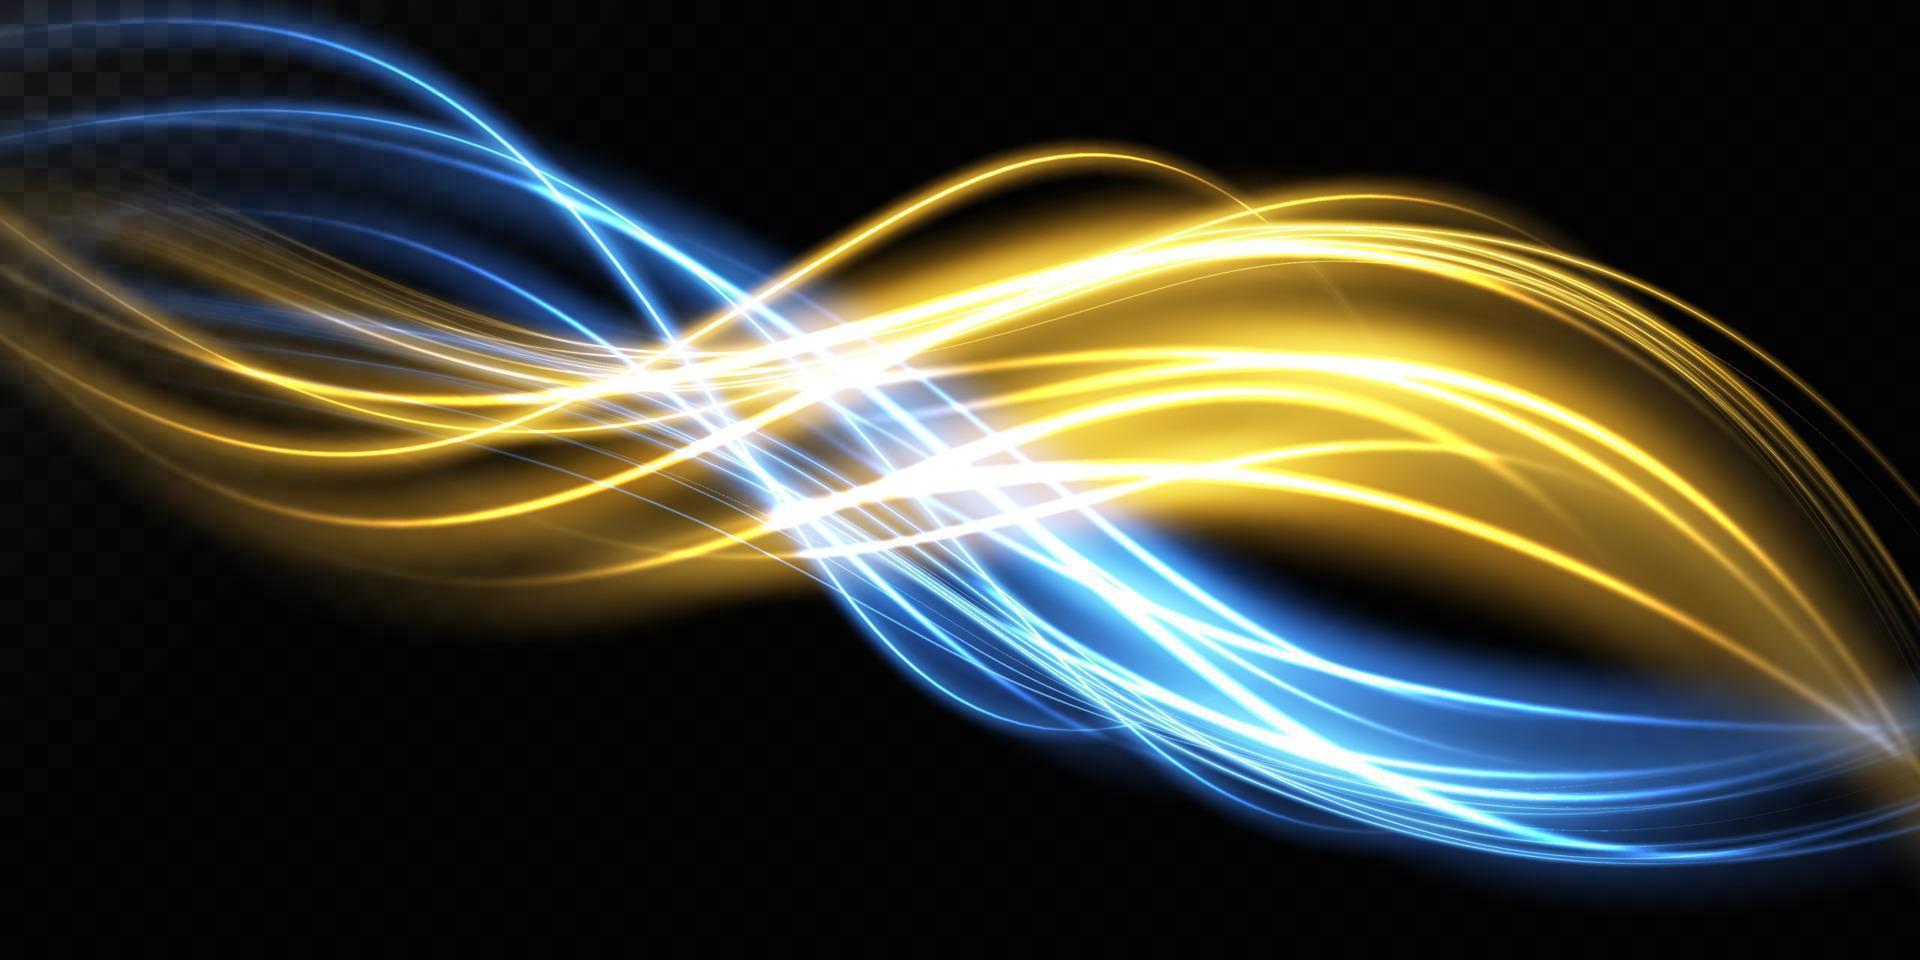 abstrait lumière lignes de mouvement et la vitesse dans bleu et or. lumière tous les jours embrasé effet. semi-circulaire vague, lumière Piste courbe tourbillon, voiture phares, incandescent optique fibre png. vecteur